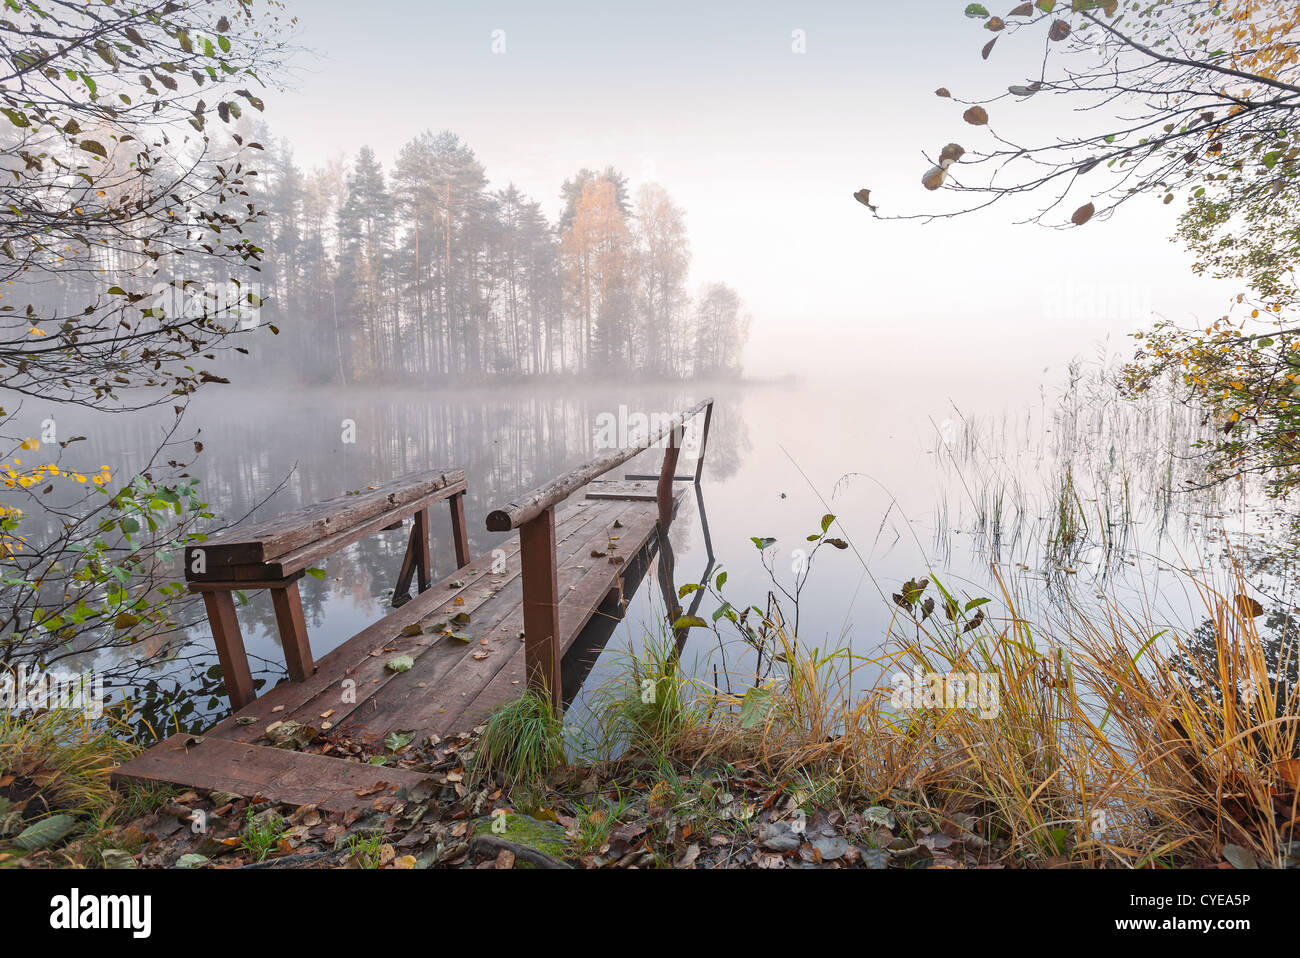 Petite jetée en bois sur le lac toujours en automne Matin brumeux Banque D'Images